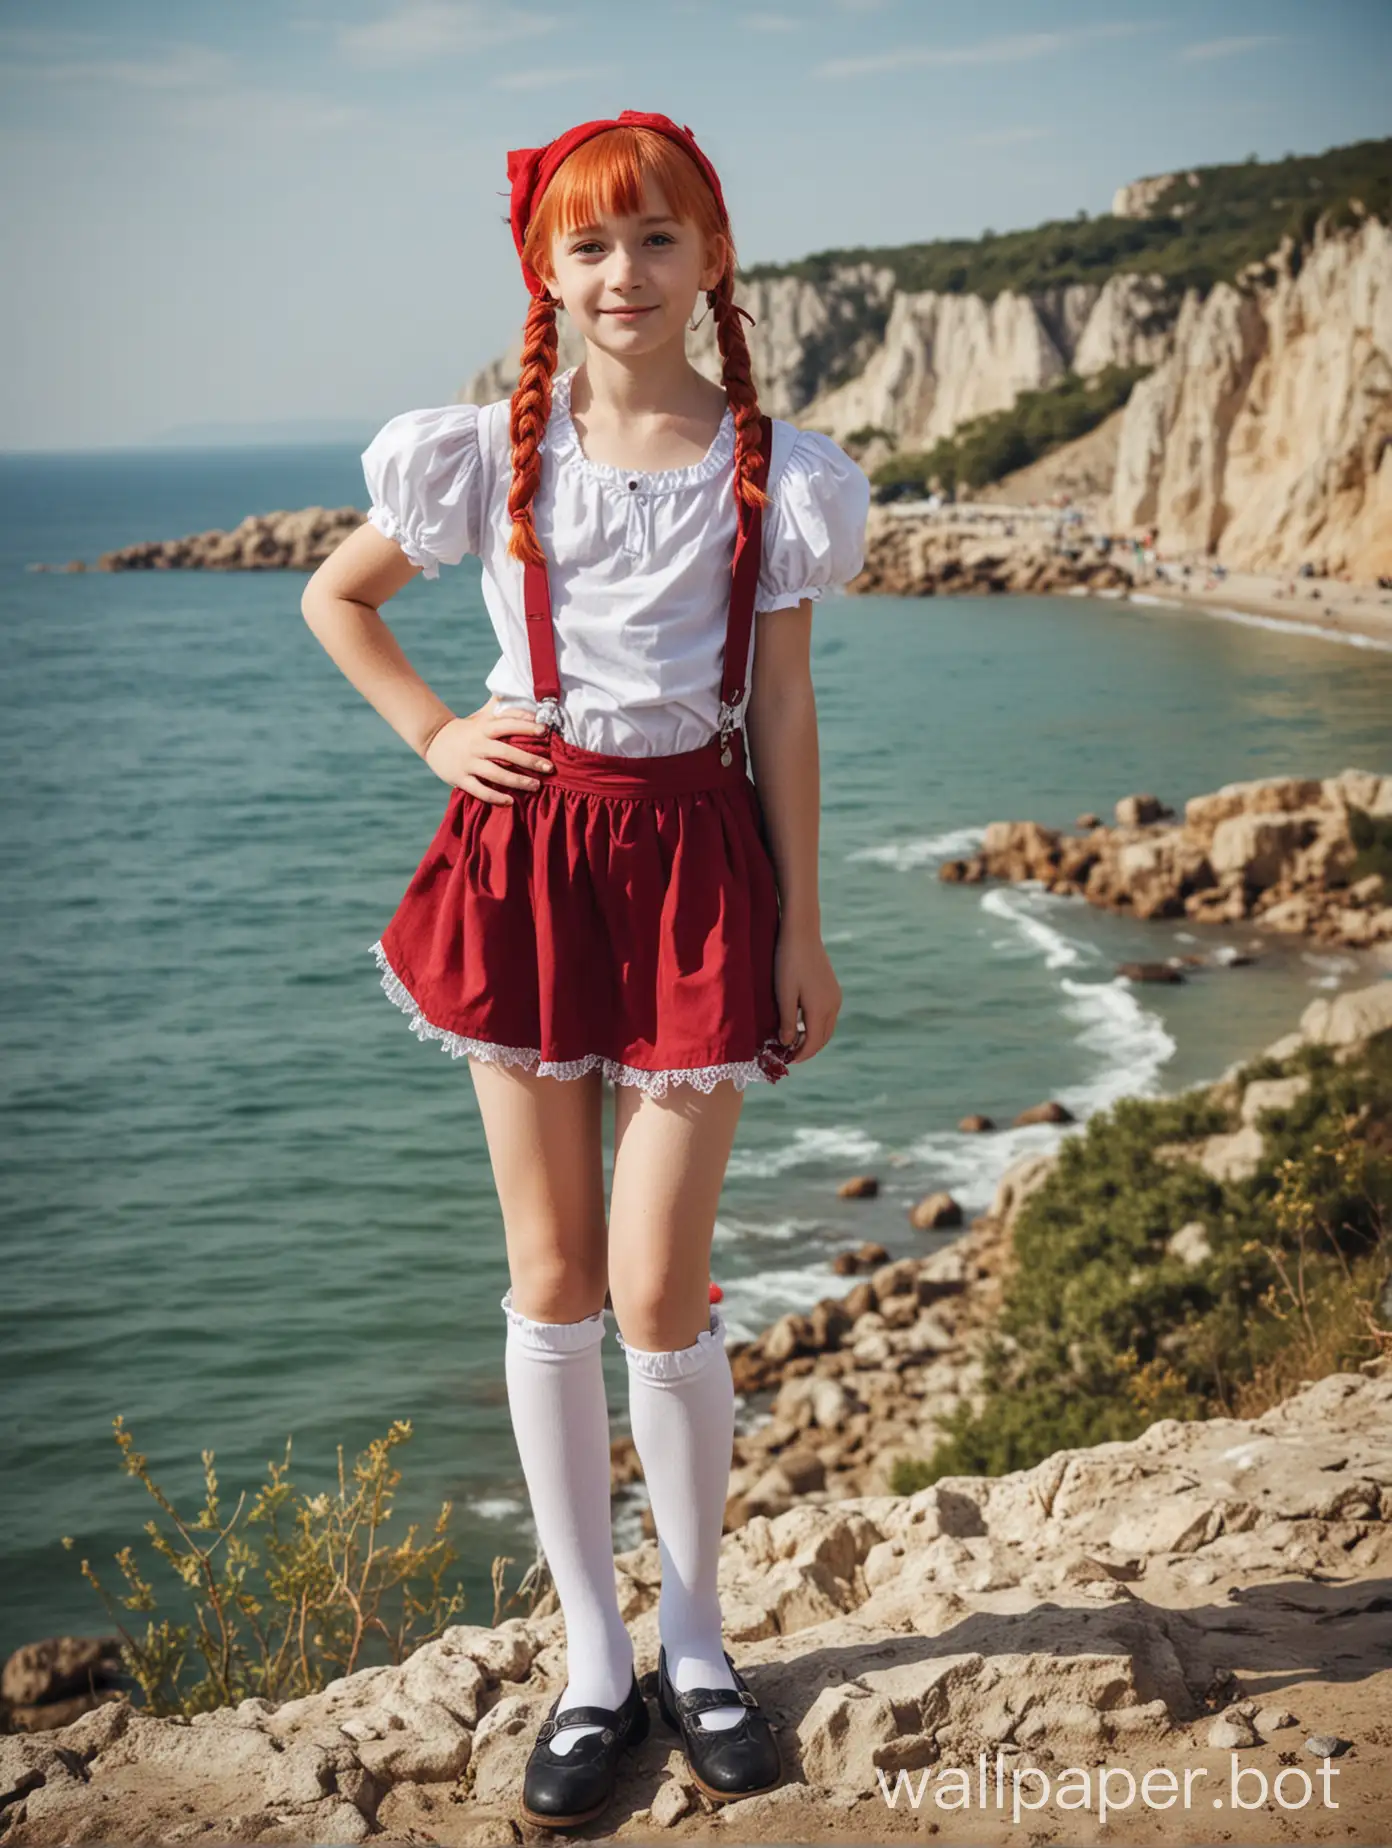 Крым, вид на море, девочка 10 лет в образе Пеппи длинный чулок, в полный рост, косплей, короткая юбка